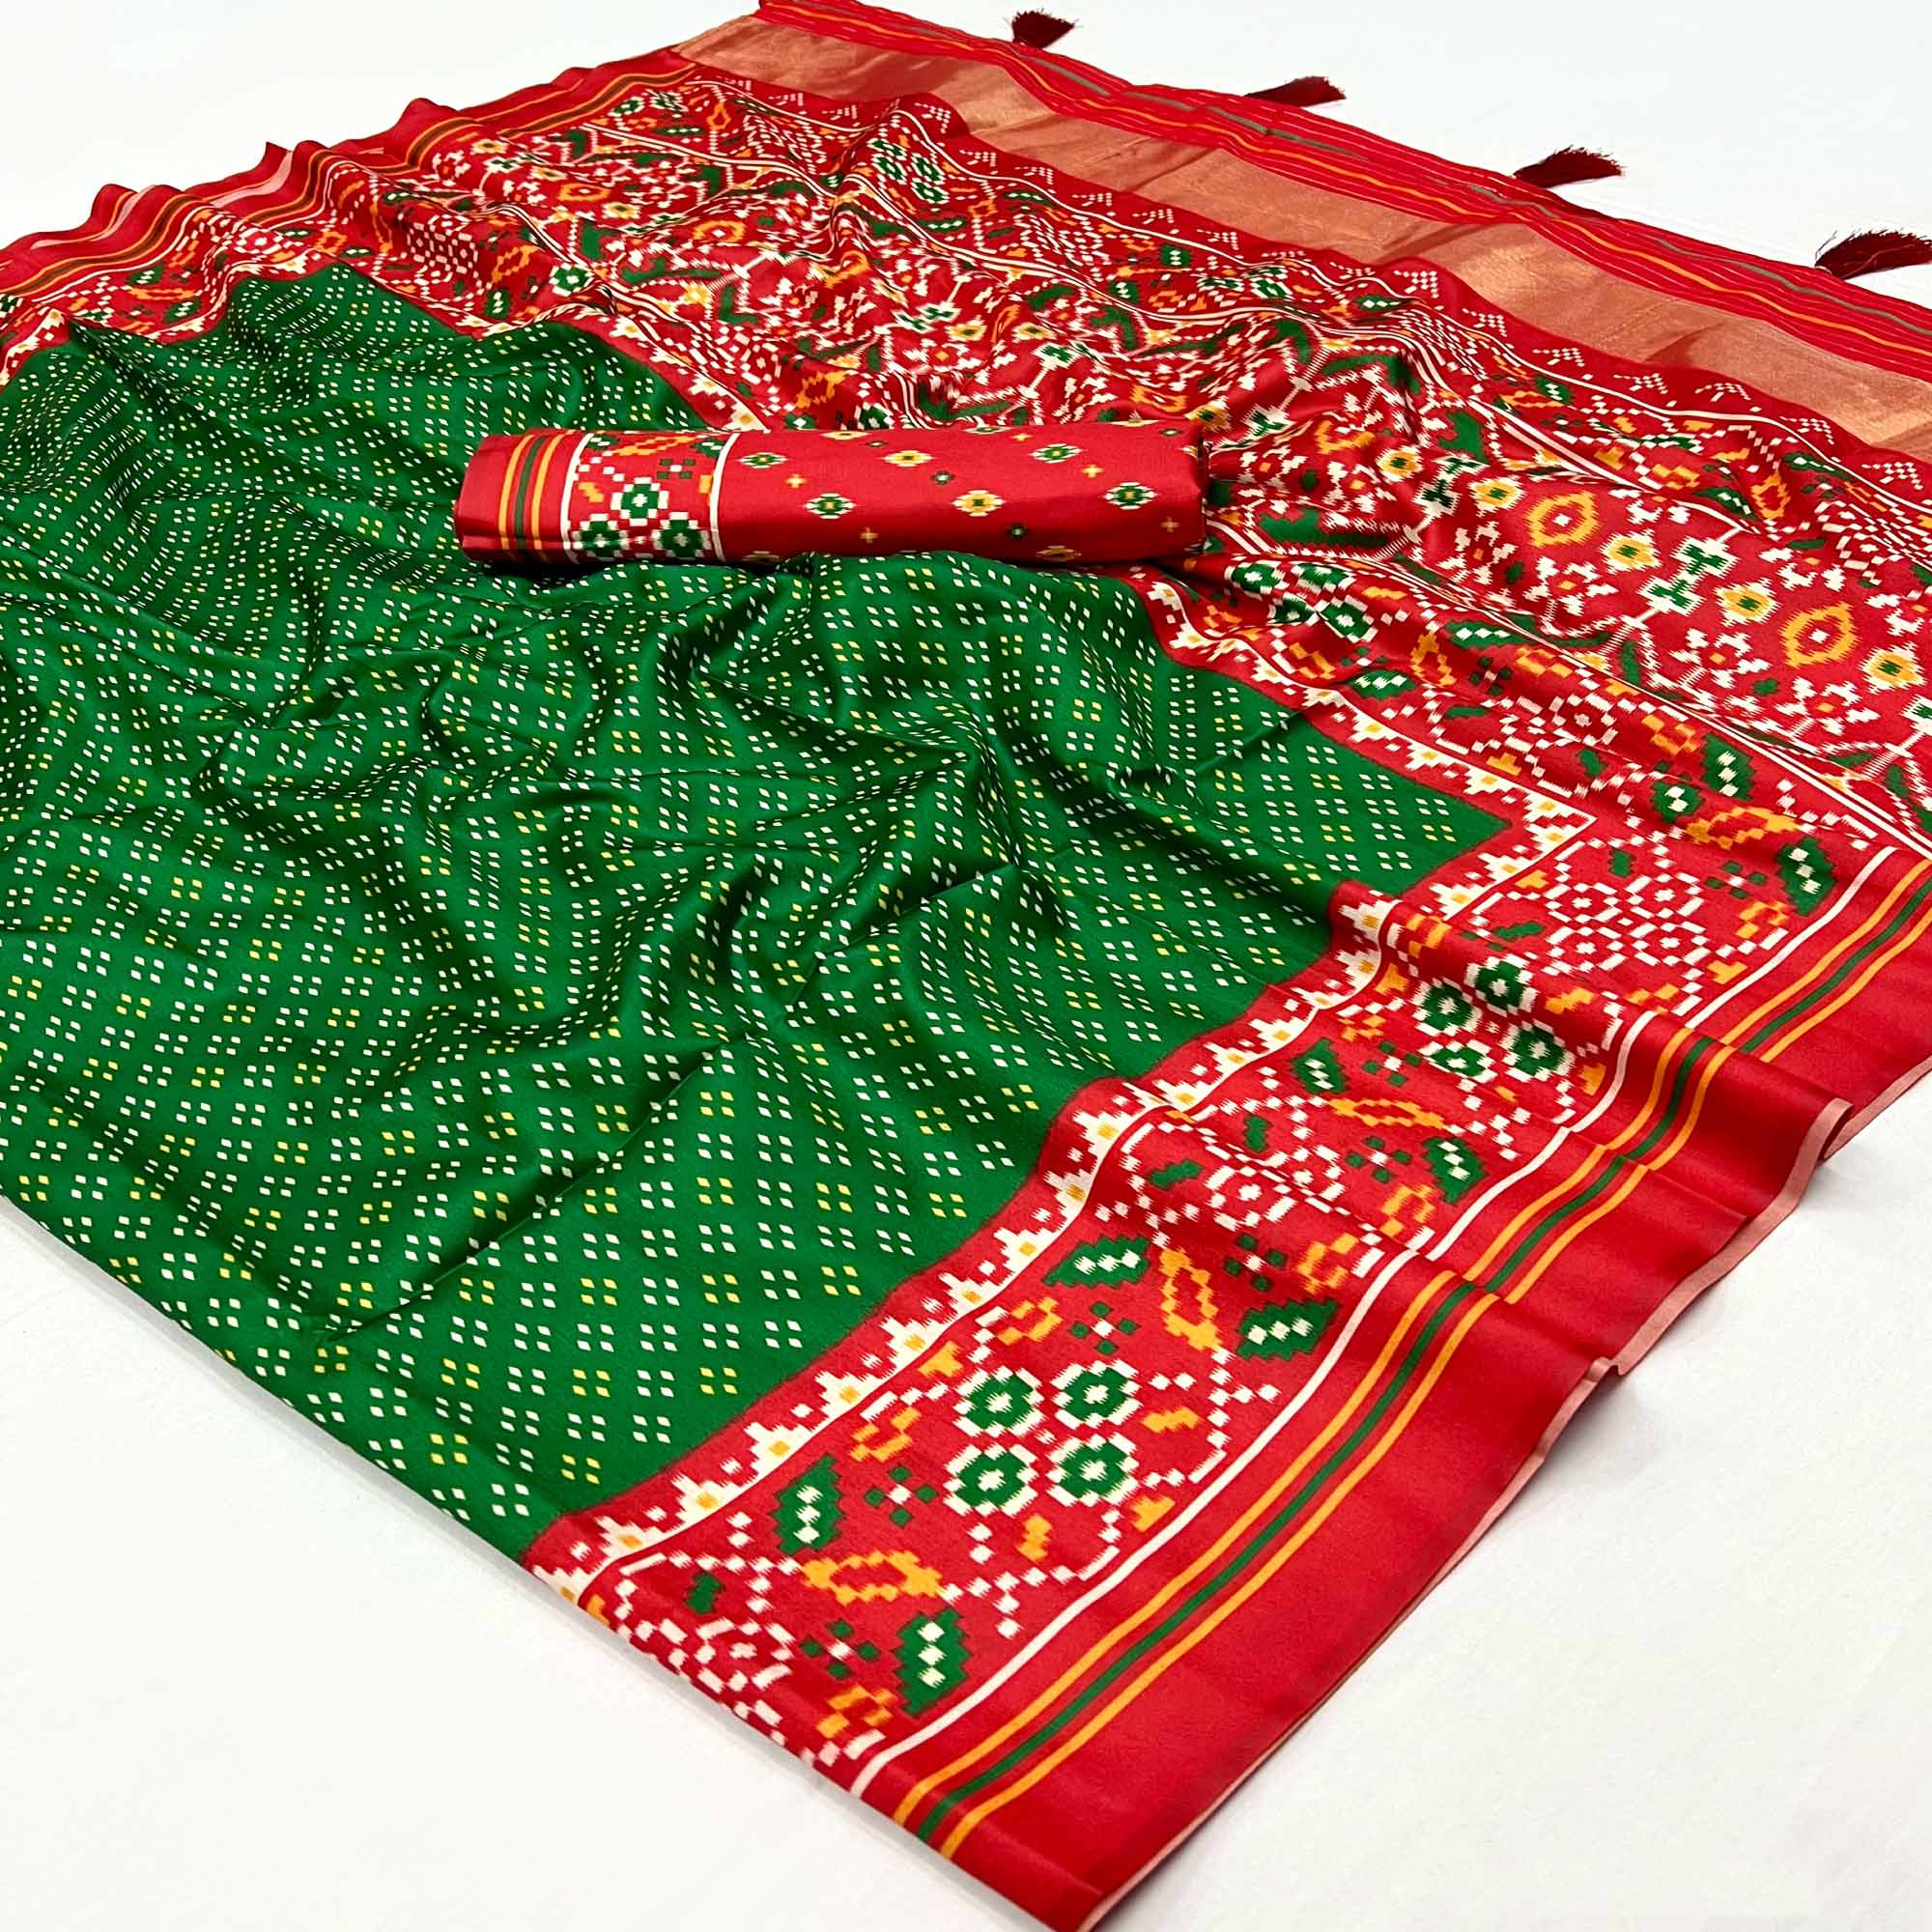 Green Patola Printed Tussar Silk Saree With Tassels